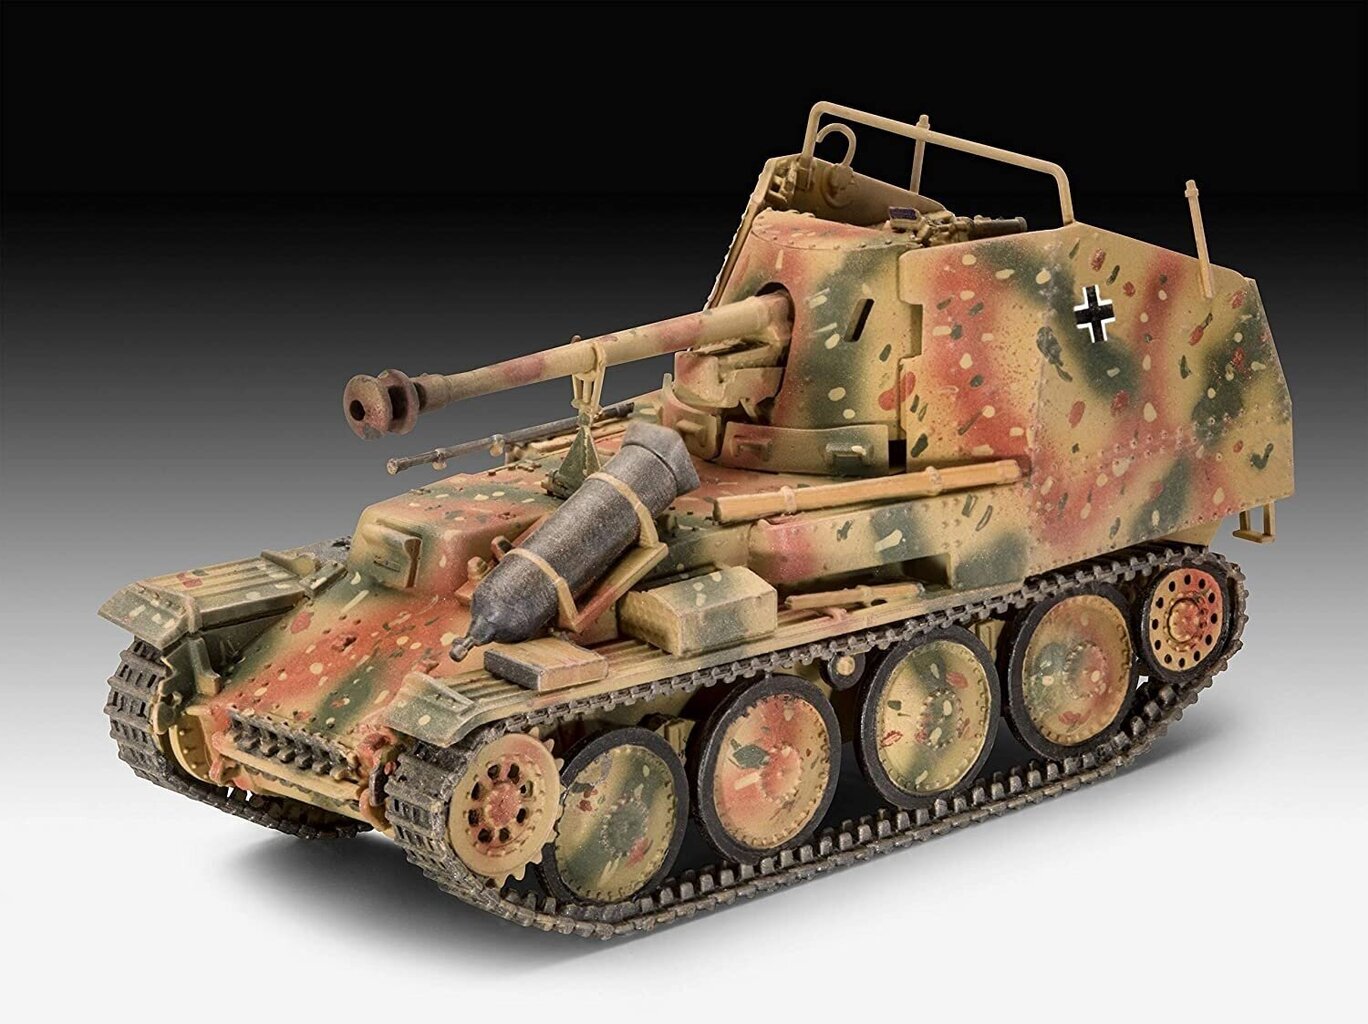 Revell - Sd.Kfz.138 Marder III Ausf.M, 1/72, 03316 cena un informācija | Konstruktori | 220.lv